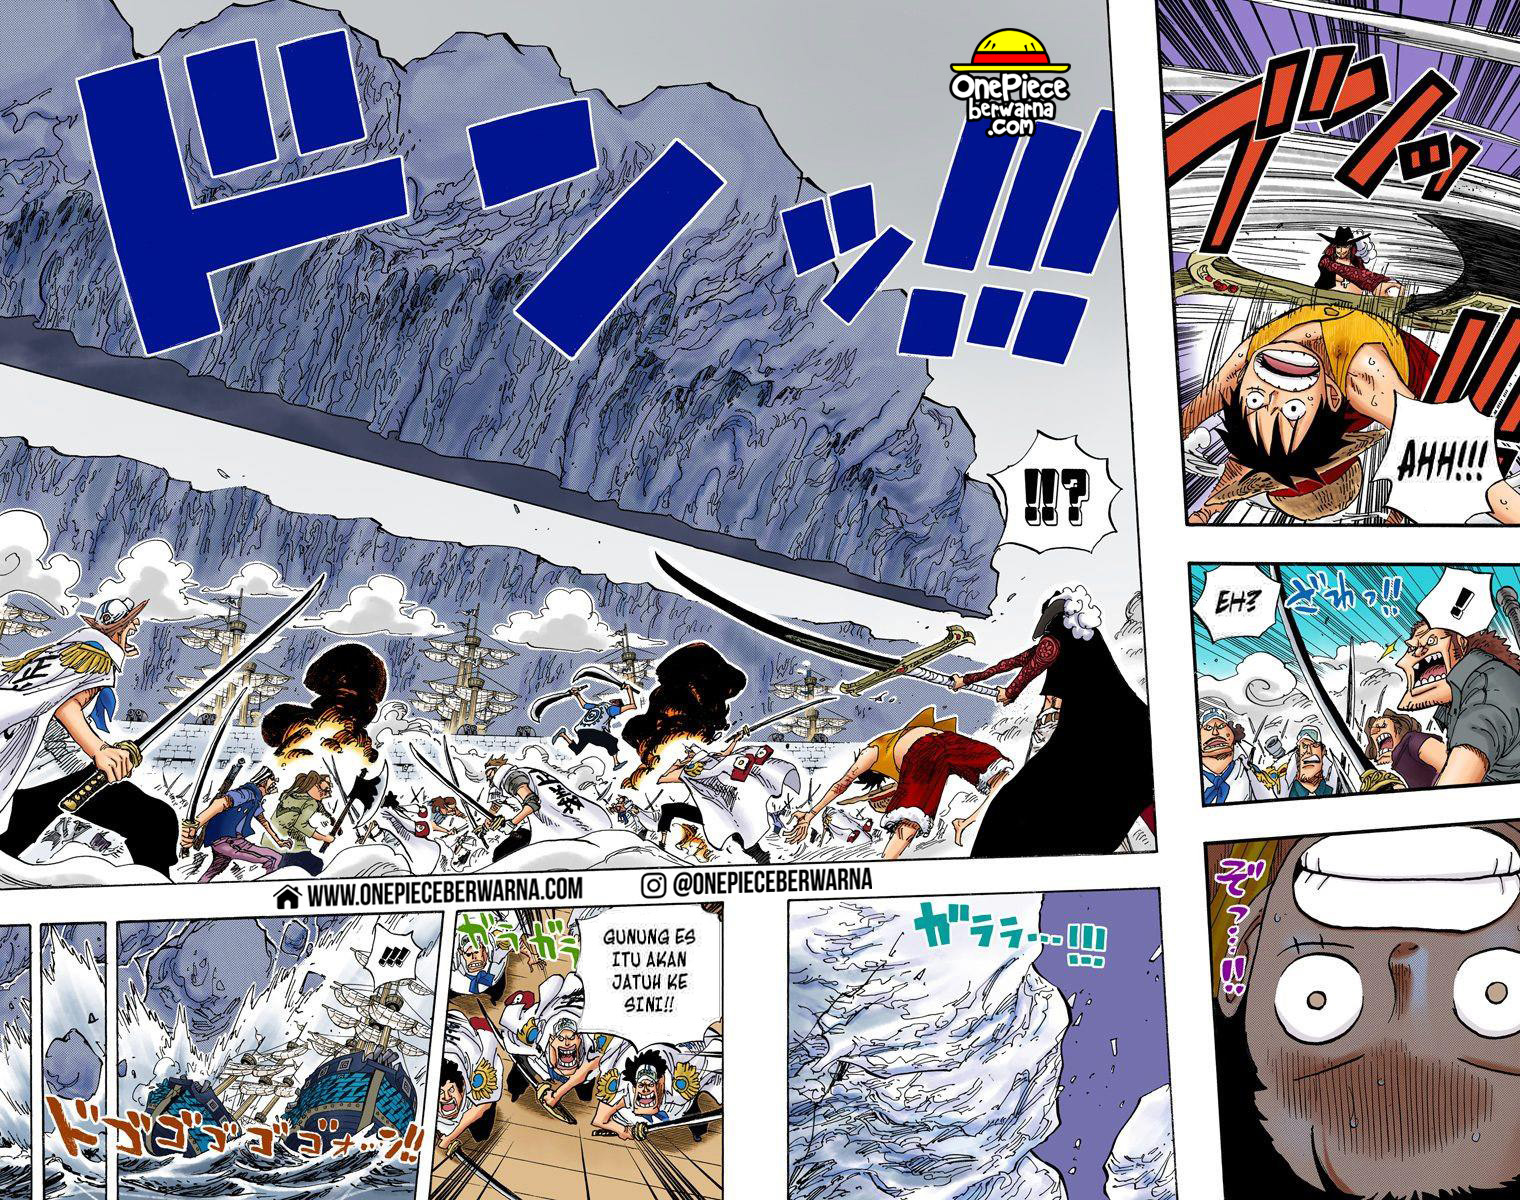 One Piece Berwarna Chapter 561